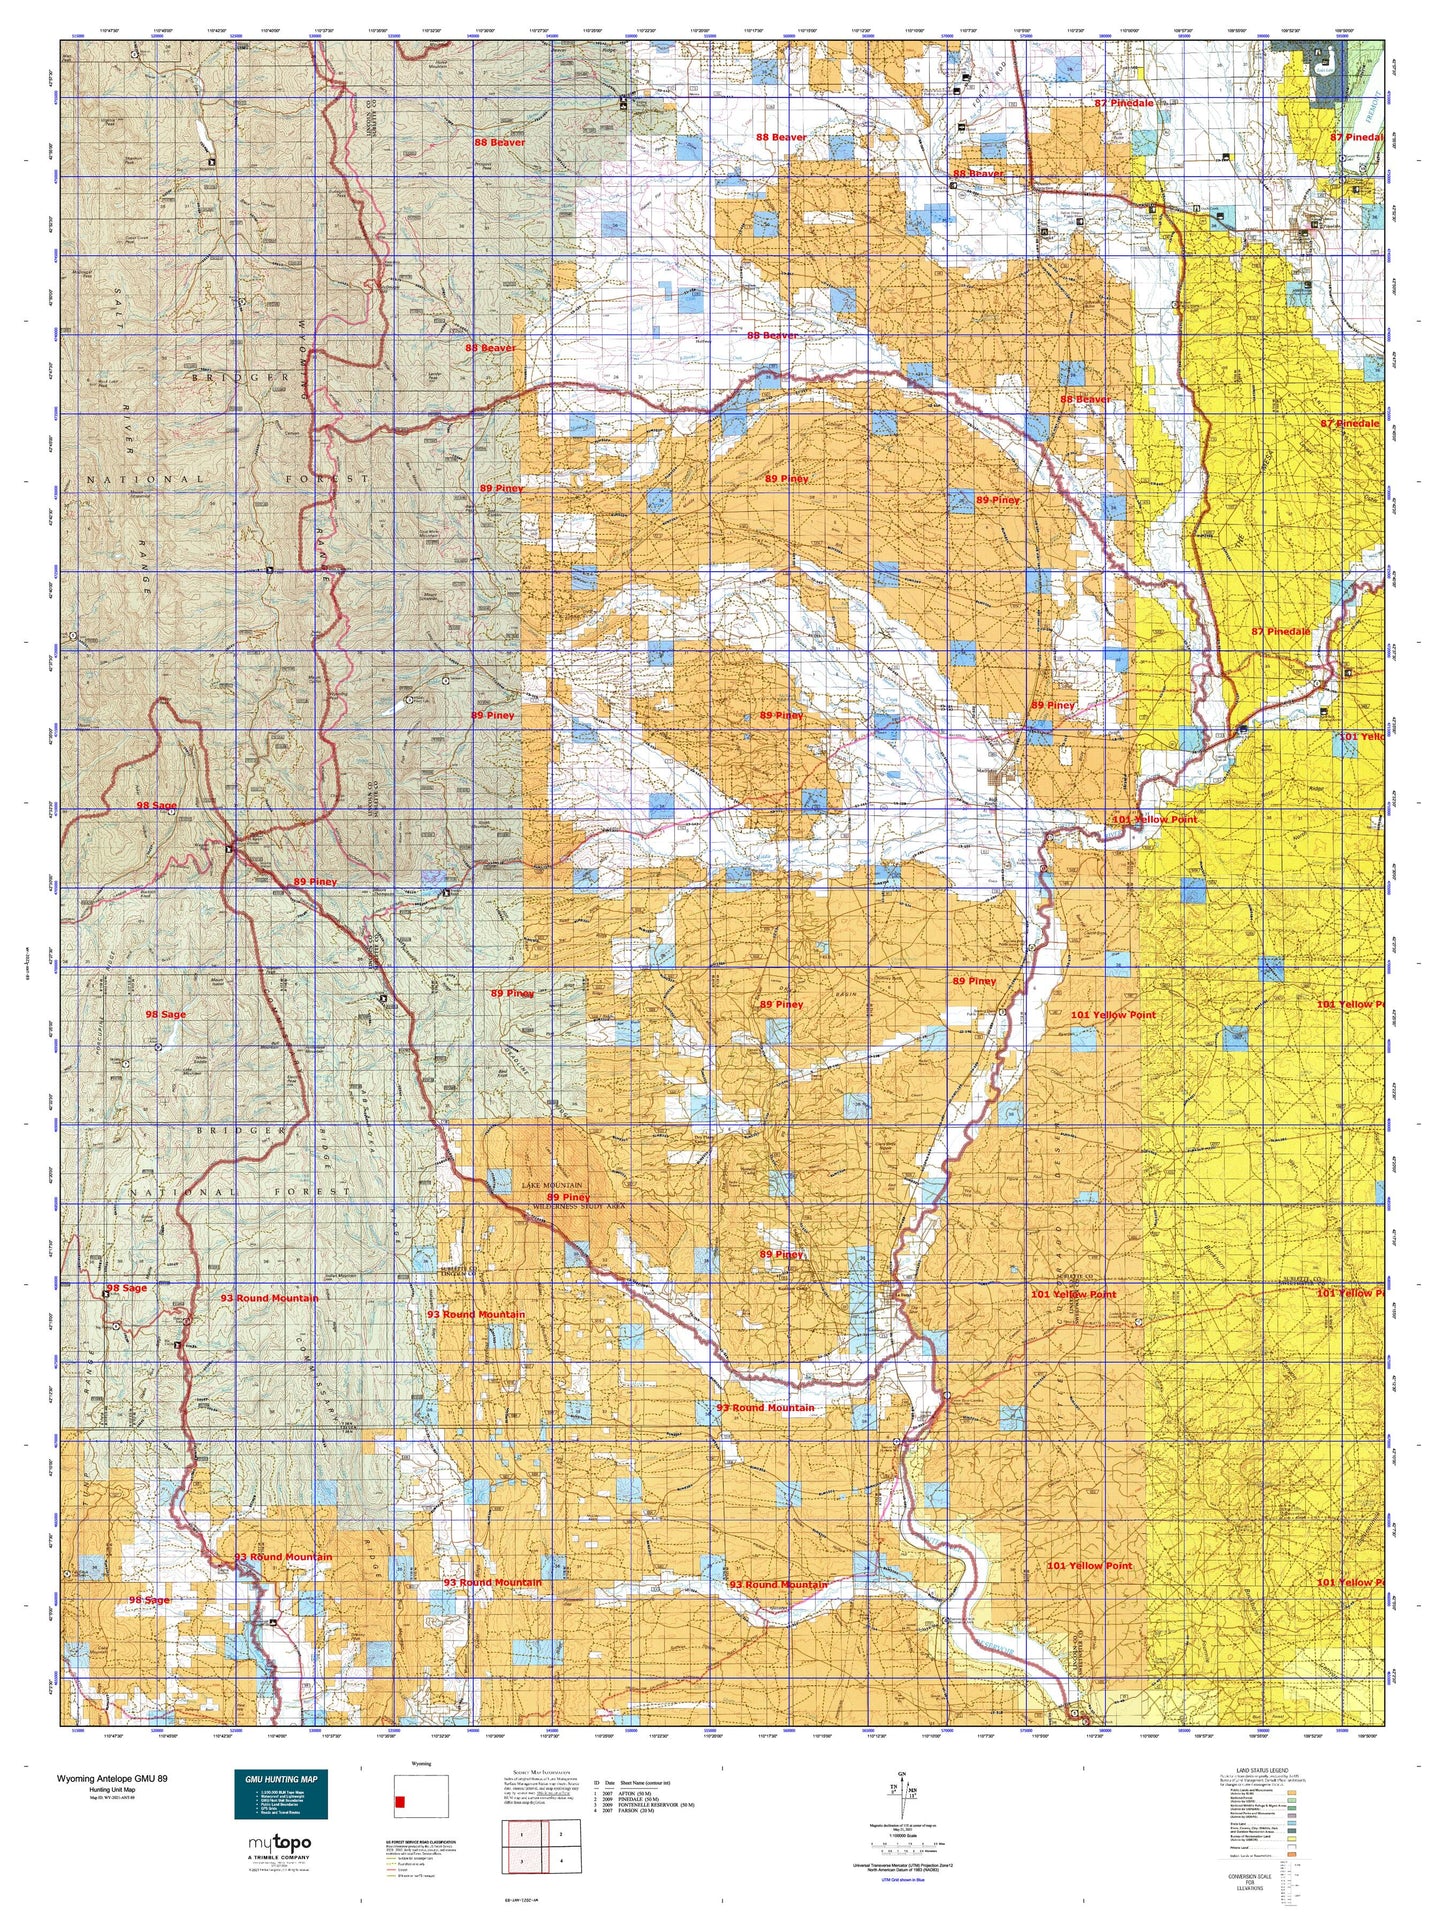 Wyoming Antelope GMU 89 Map Image